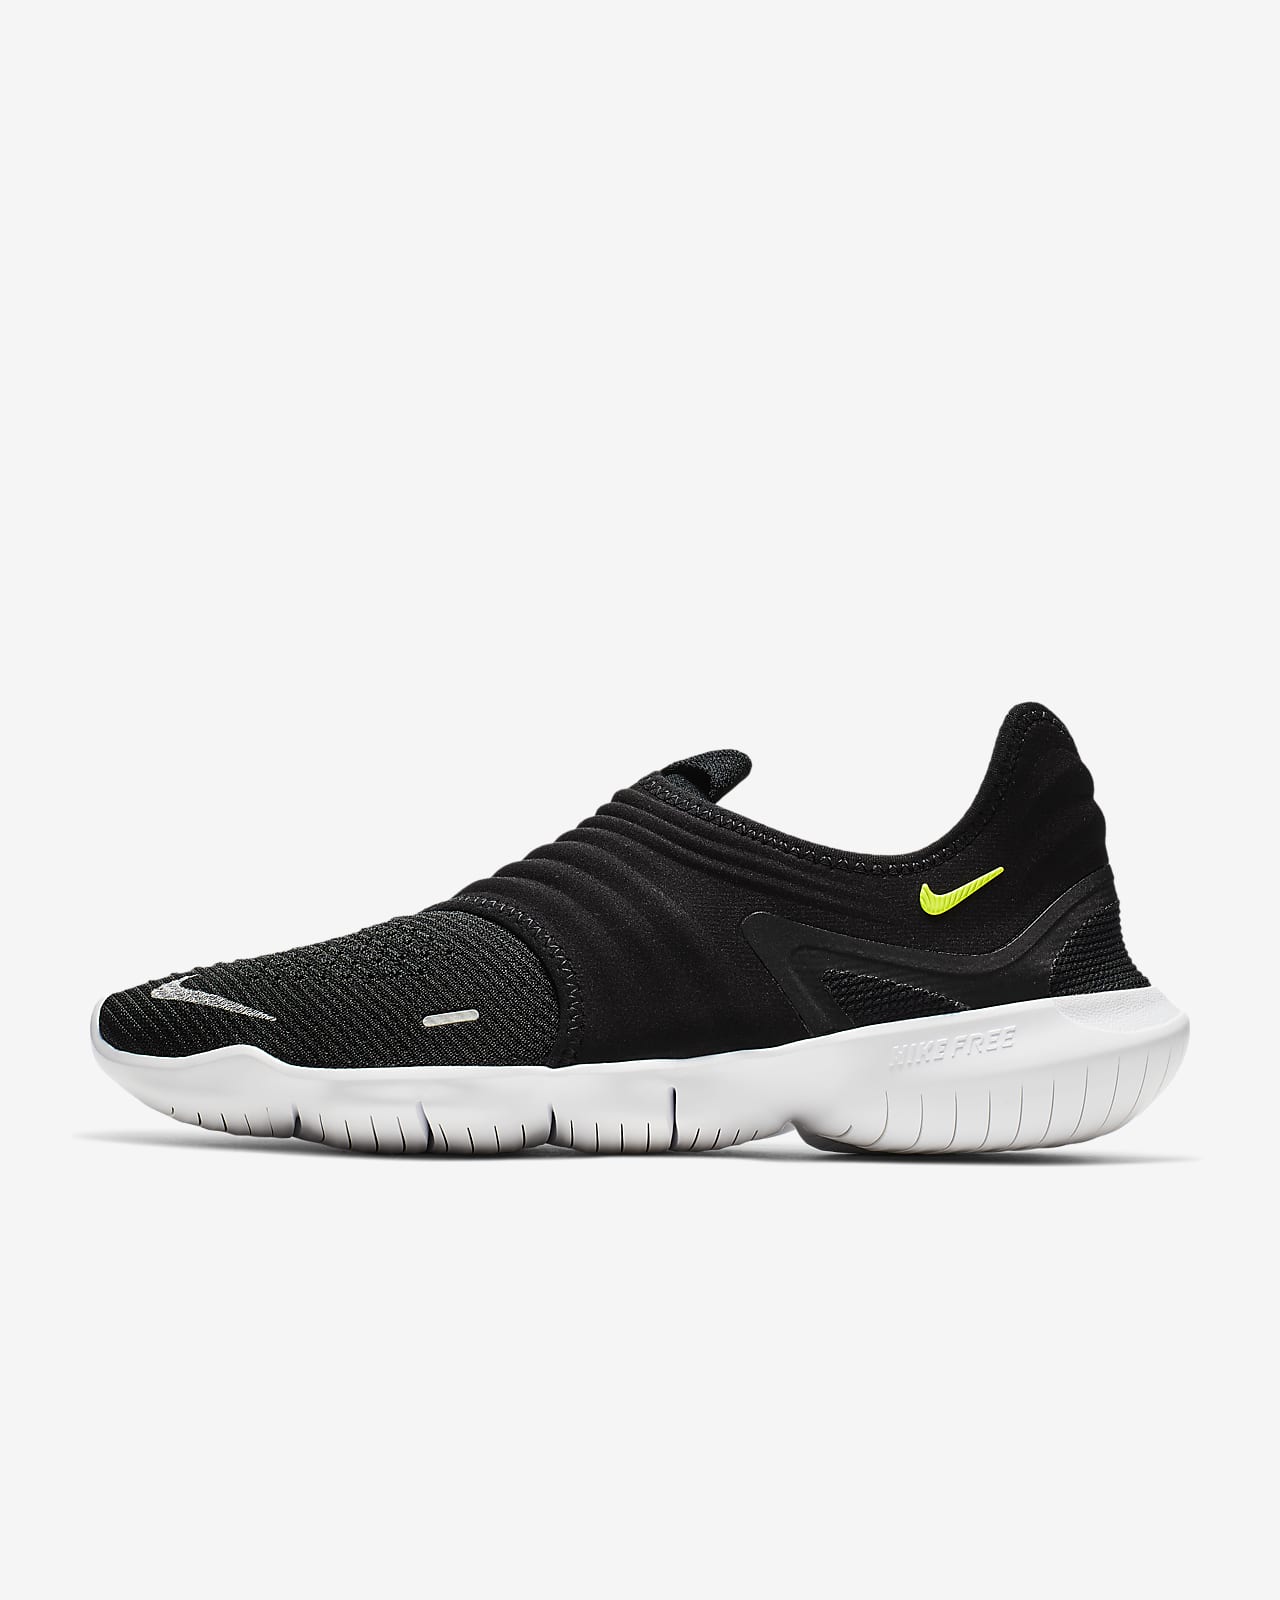 Nike Free RN Flyknit 3.0 Men's Running Shoe. Nike SG